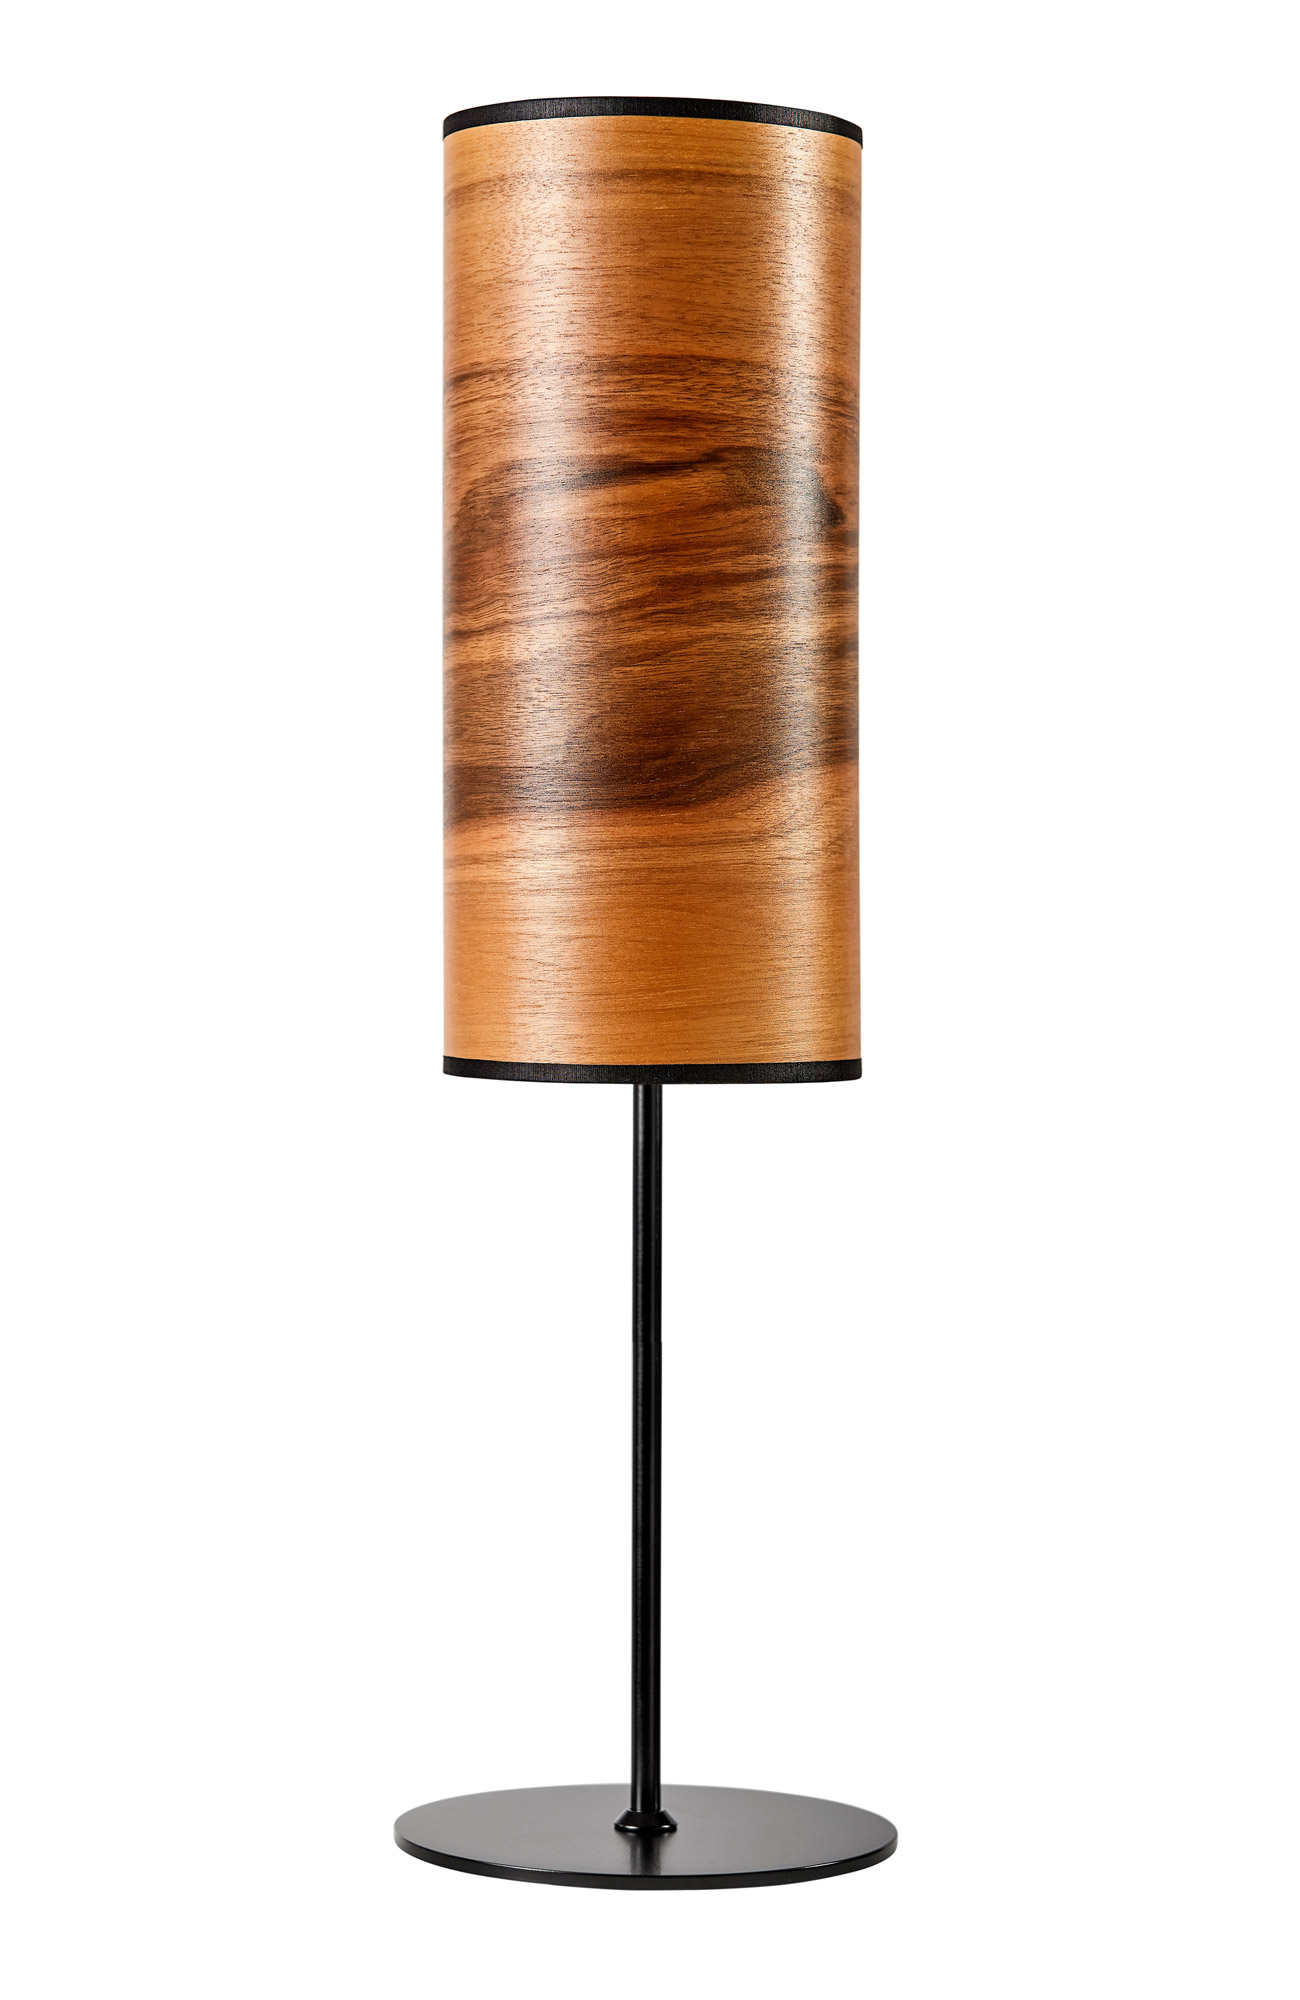 LeuchtNatur HolzDesignPur ARBOREUS | von Tischleuchte Design